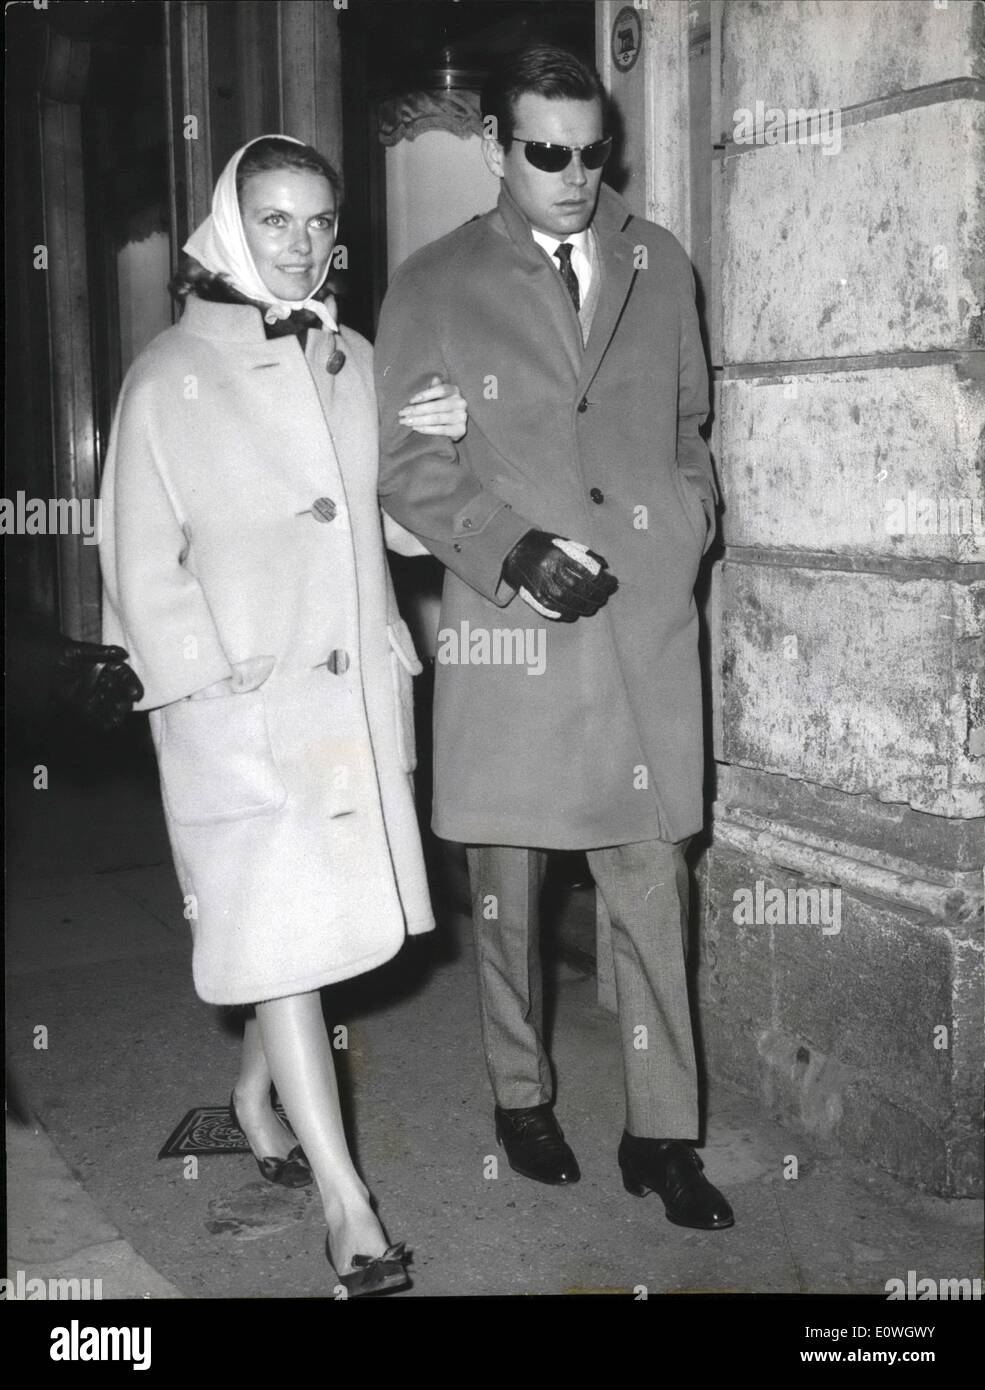 Le 12 décembre 1962 - l'acteur américain Robert Wagner qui est en réalité à Rome à jouer dans ''The red panther'' souffre d'une infection aux yeux produit par l'immersion dans une piscine à l'eau pendant le tournage de ''Red Panther''. photo montre Robert Wagner et sa fiancée Marion Marshall qui l'avait accompagné. Banque D'Images